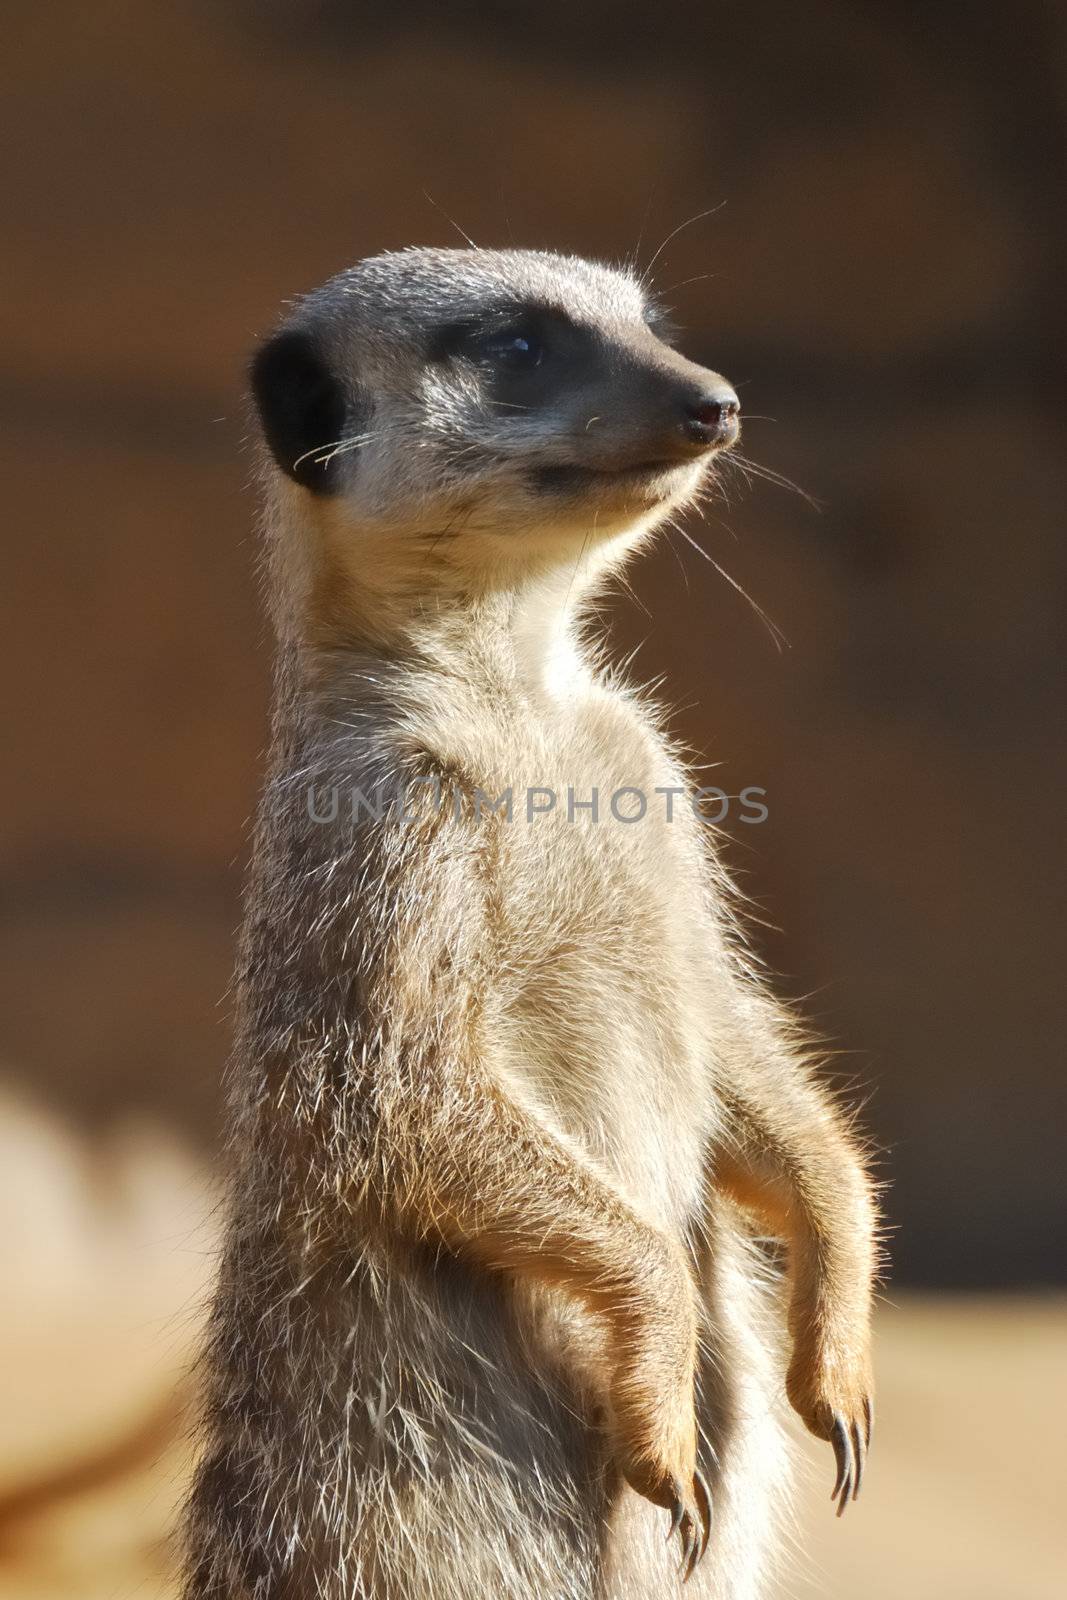 Standing Meerkat by pauws99